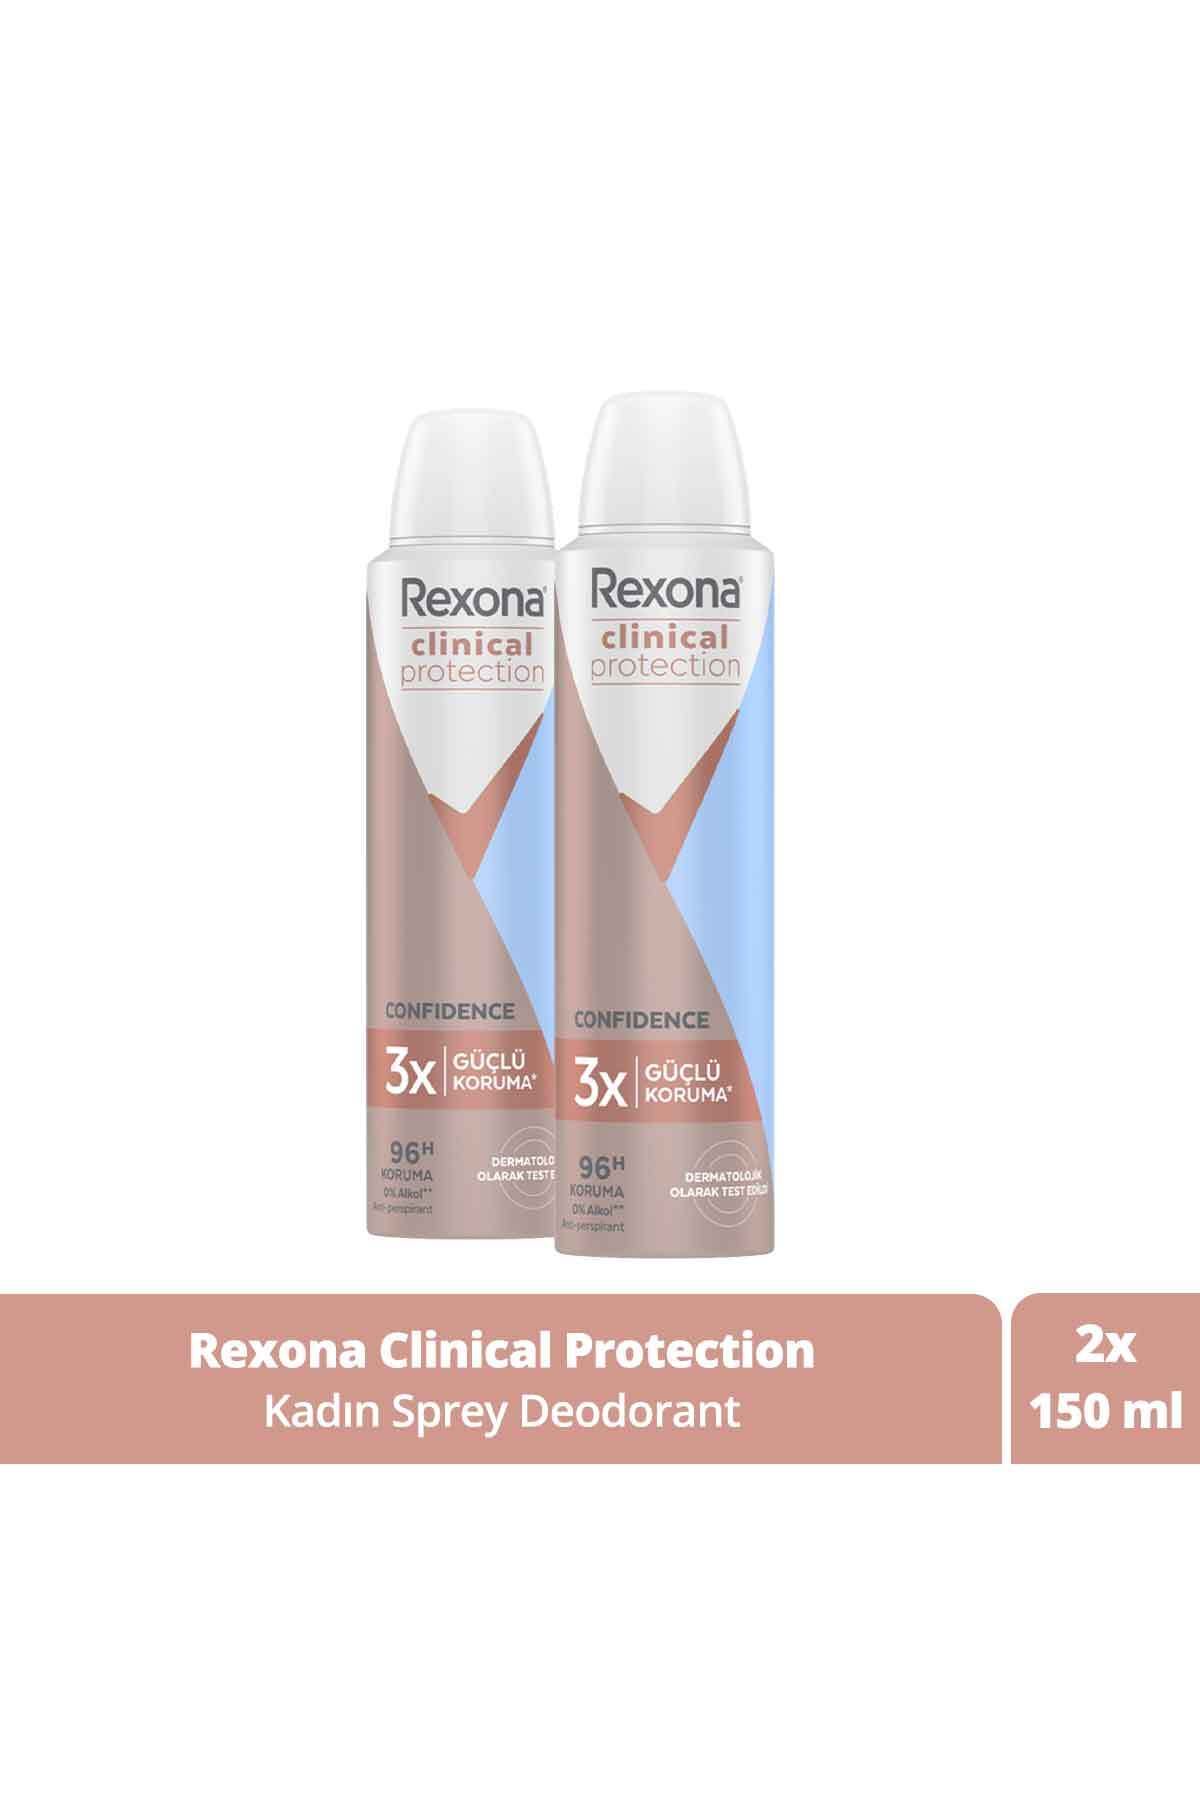 Rexona Clinical Protection Kadın Sprey Deodorant Confidence 96 Saat Koruma 150 Ml X2